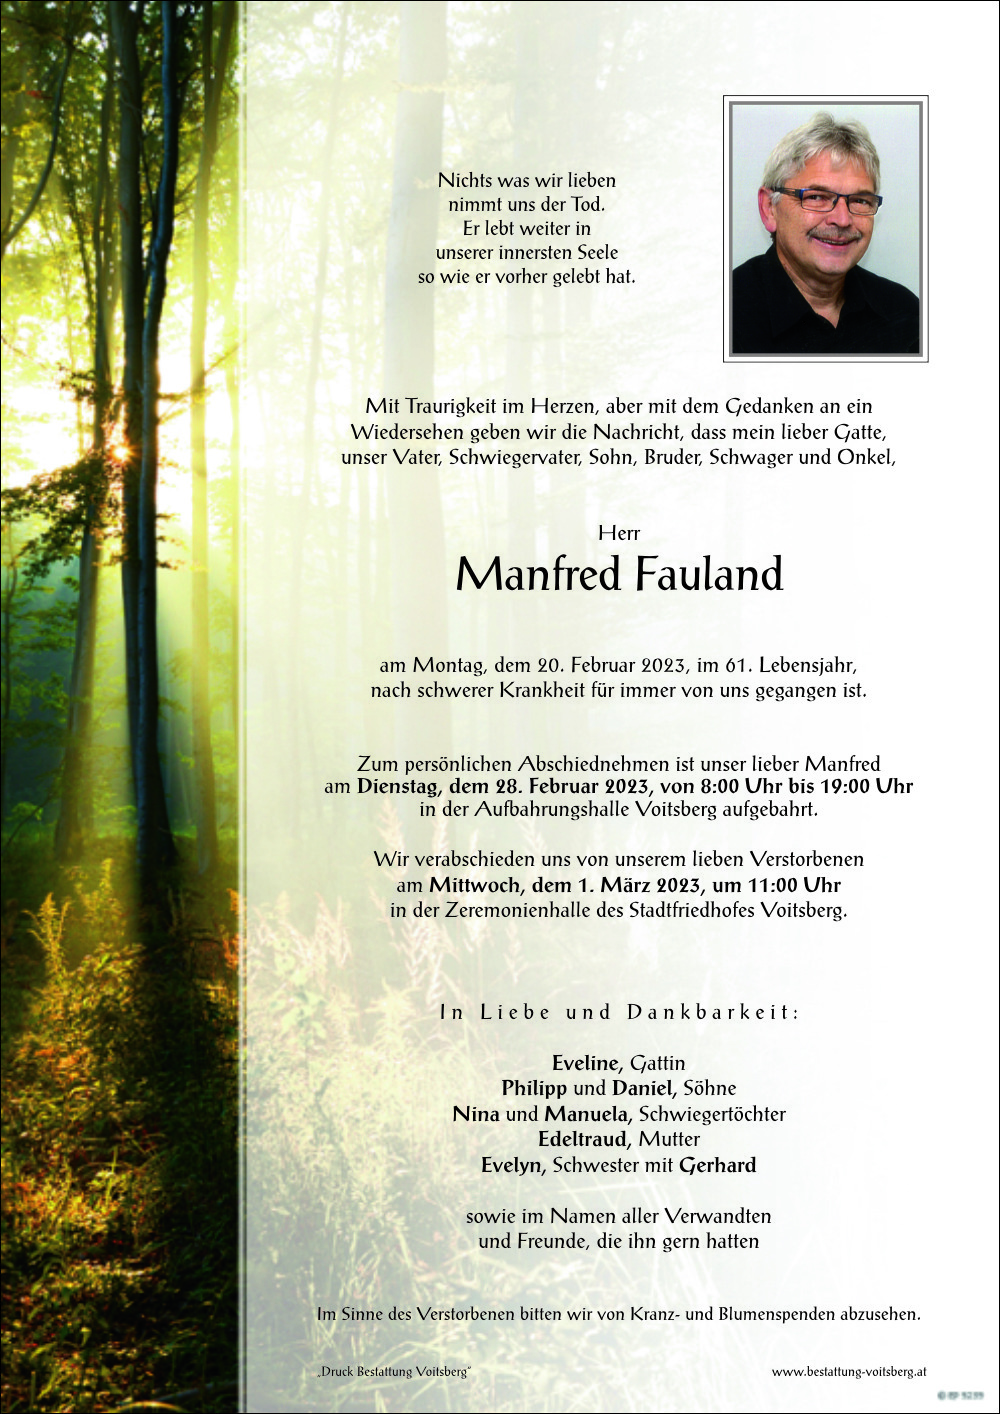 Manfred Fauland